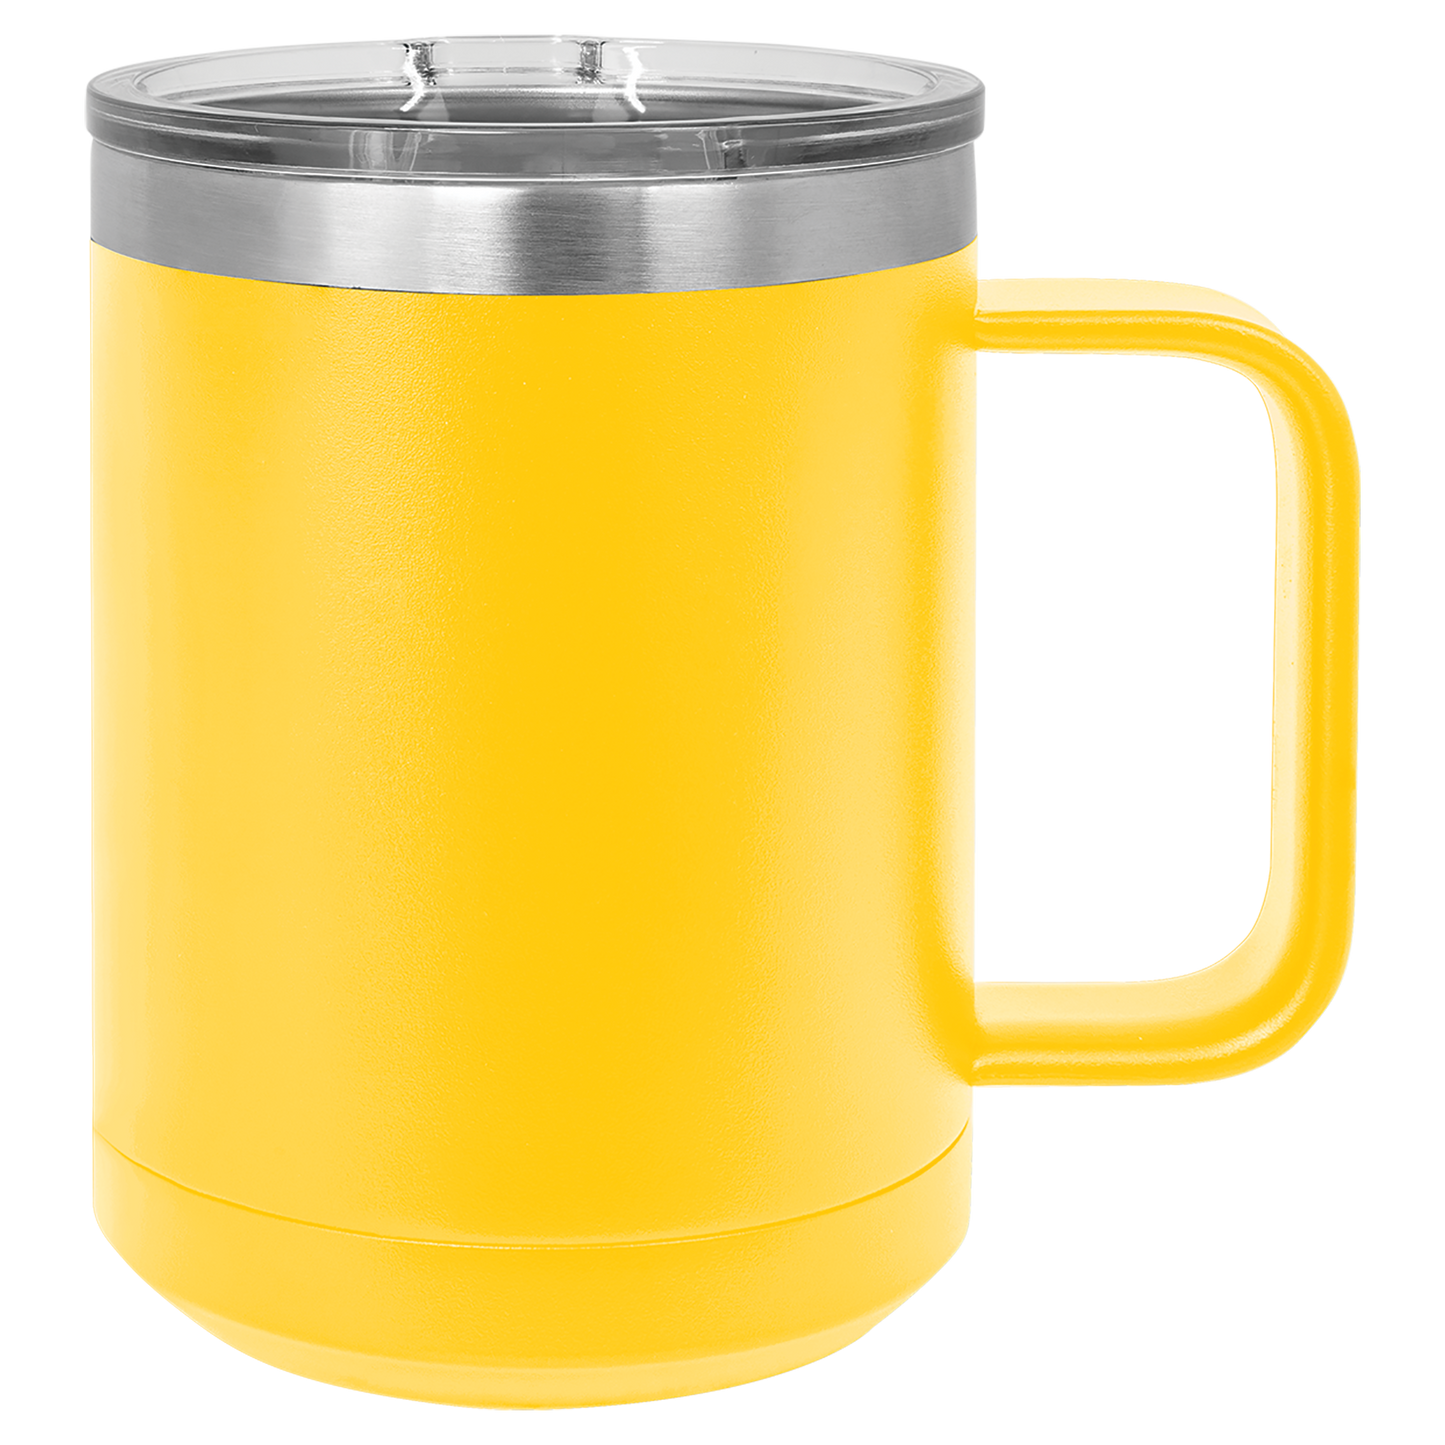 Yoelike 15oz Travel Mug with Handle and Lid, Stainless Steel, Dishwasher  Safe, Powder Coated, Vacuum Insulated